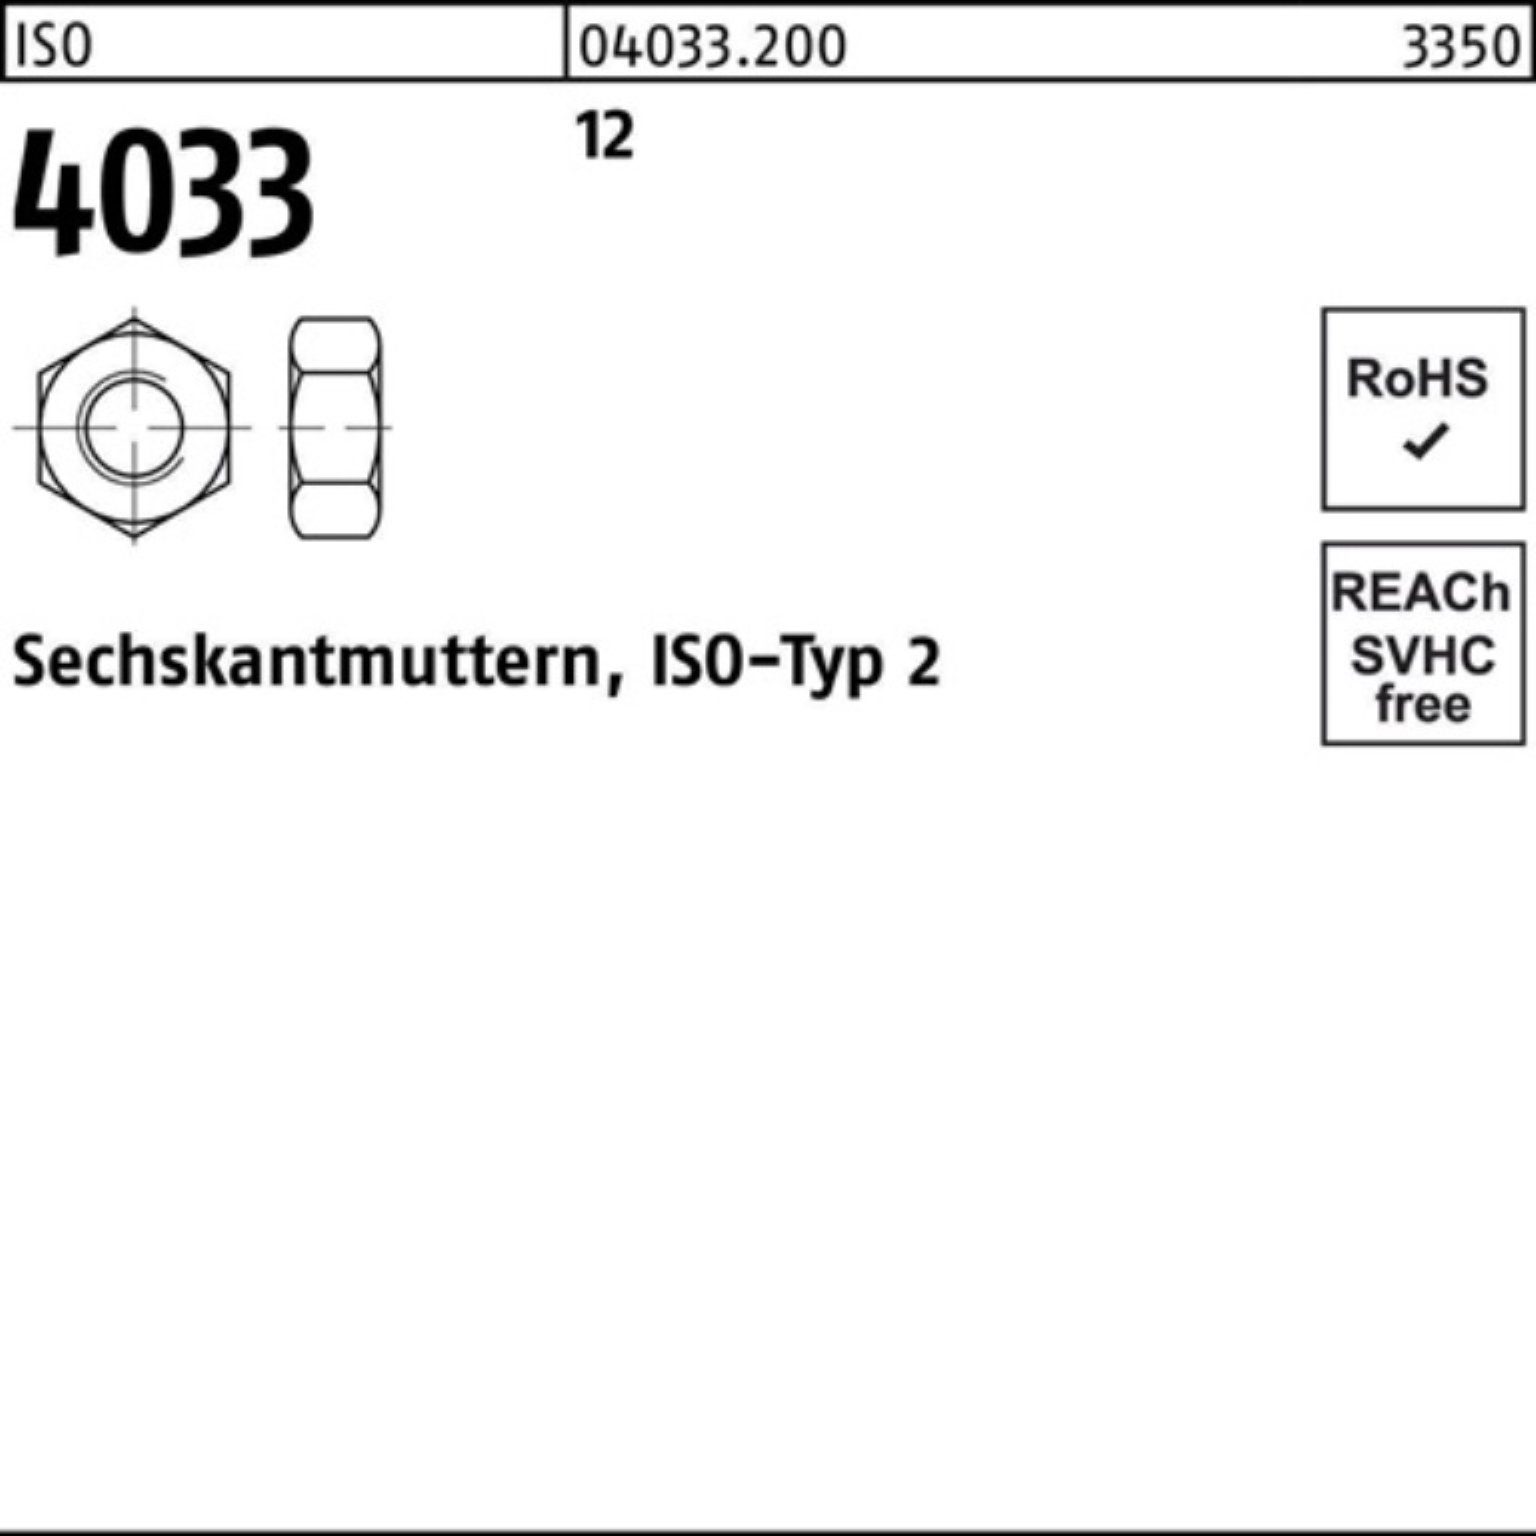 ISO 4033 Sechs Muttern Stück 10 4033 Sechskantmutter 12 Reyher M30 Pack 100er 12 ISO